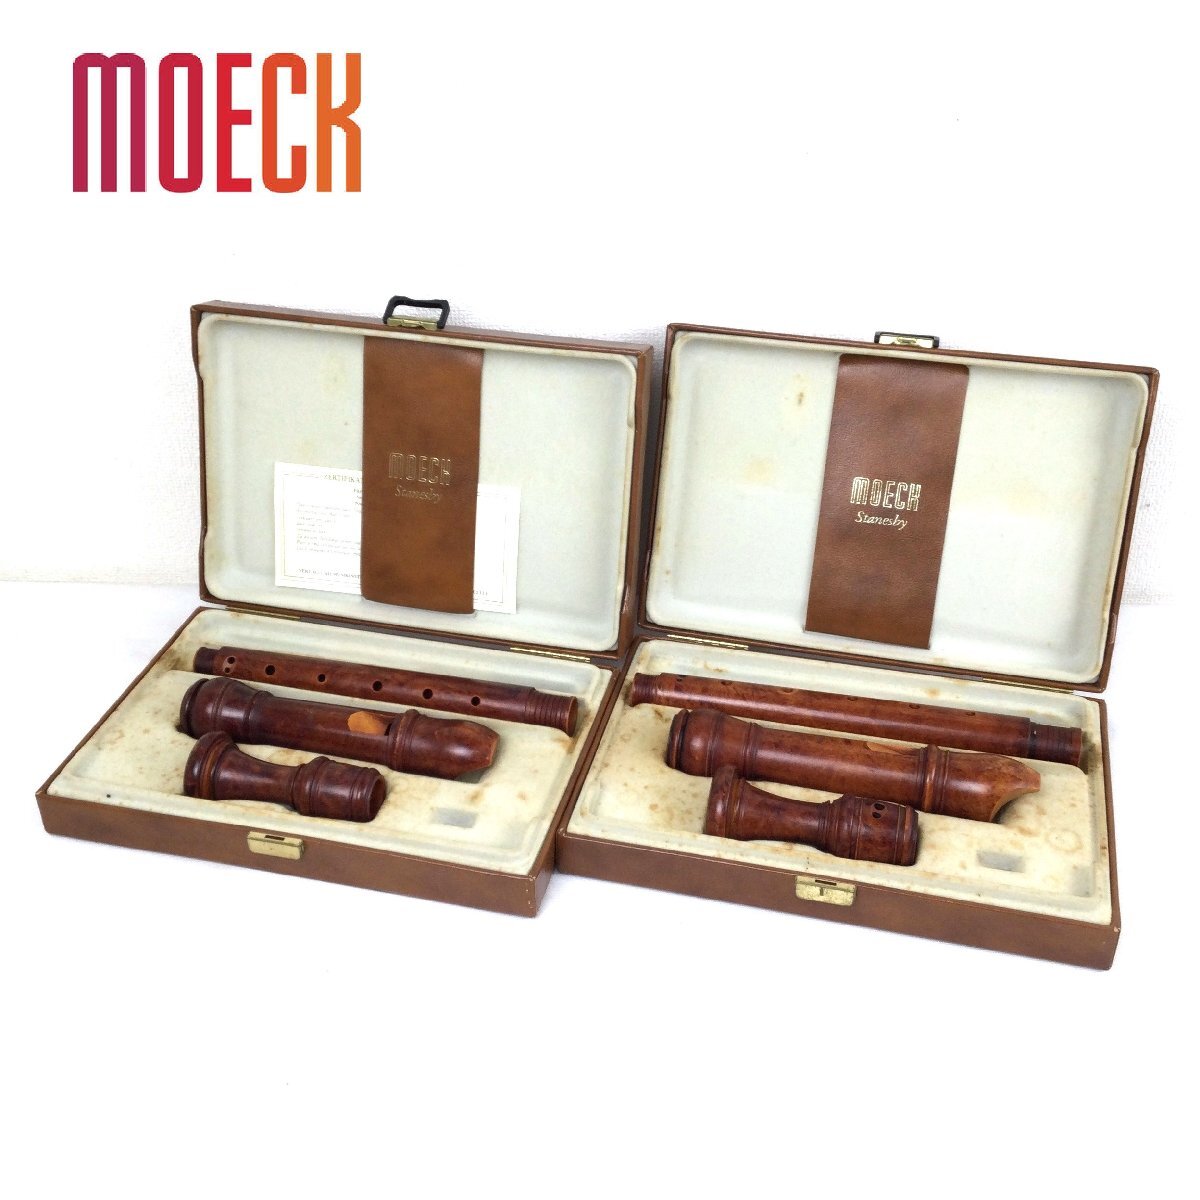 1205[ Junk ] MOECKmekFLAUTO DOLCE альт блок-флейта 2 позиций комплект духовые инструменты из дерева с коробкой Германия 